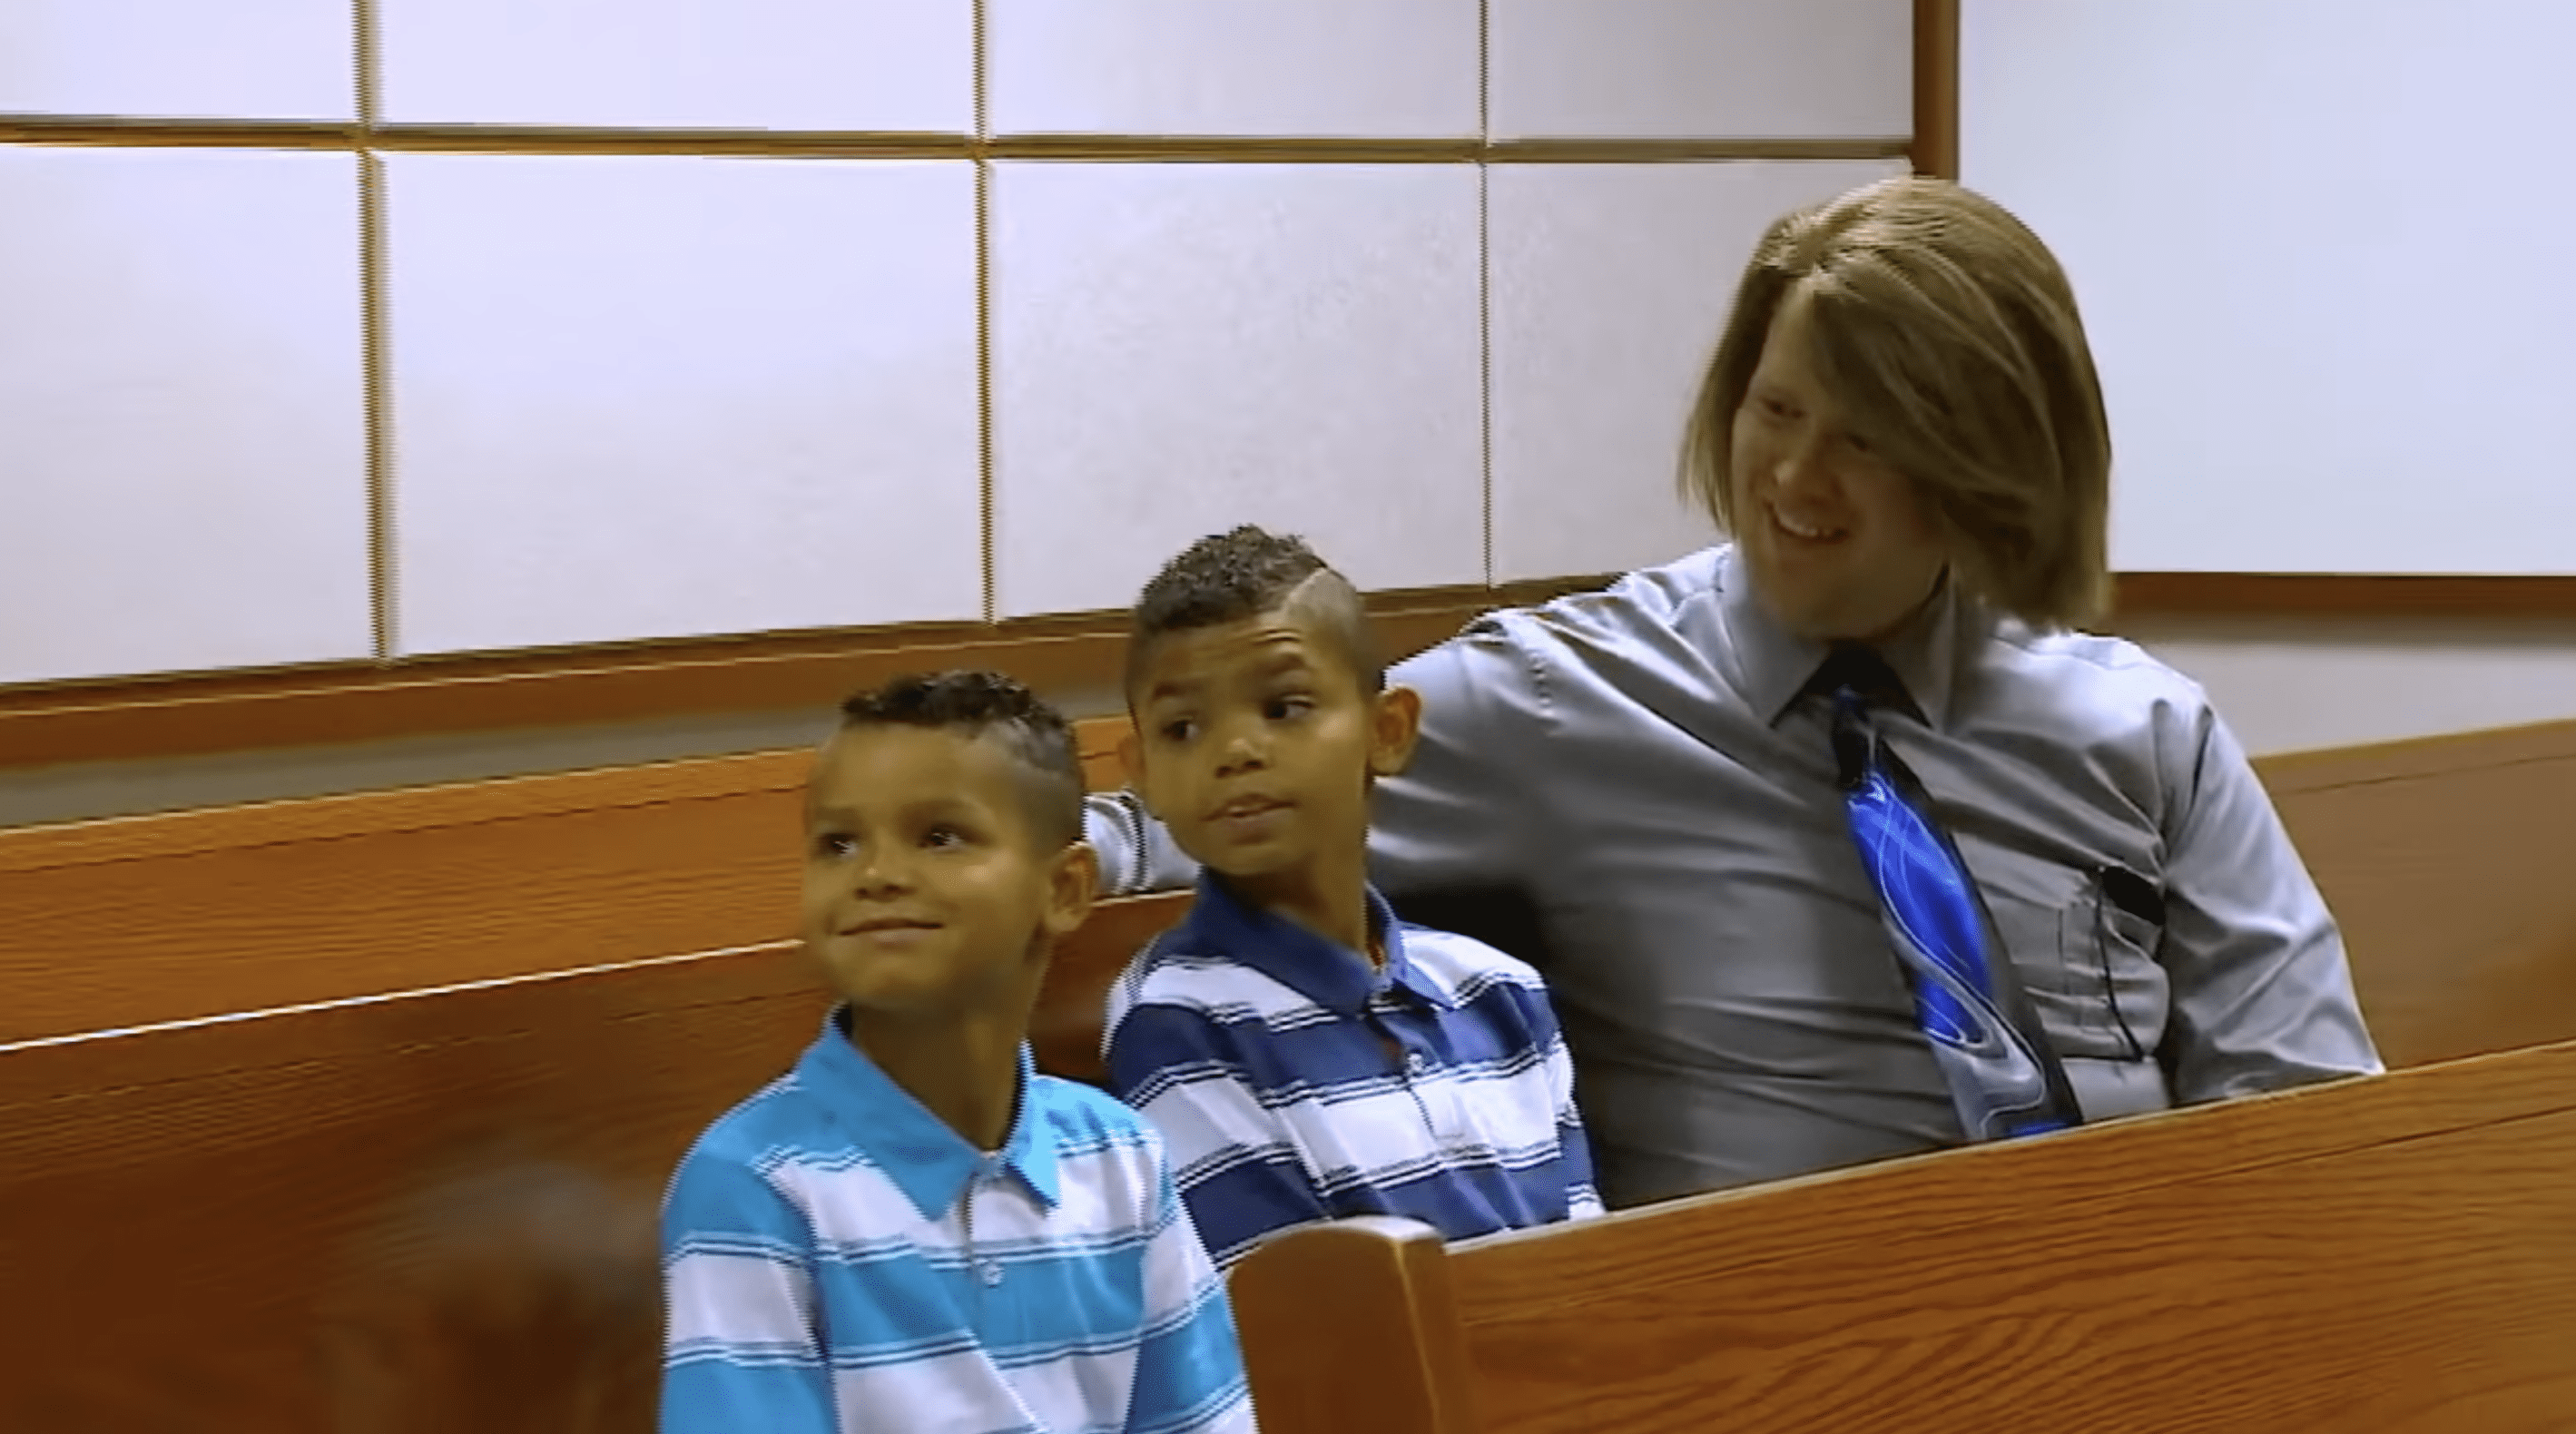 Ke'Lynn und Tre im Gerichtssaal mit ihrem Adoptivvater Dr. Robert Beck. | Quelle: YouTube.com/WFAA